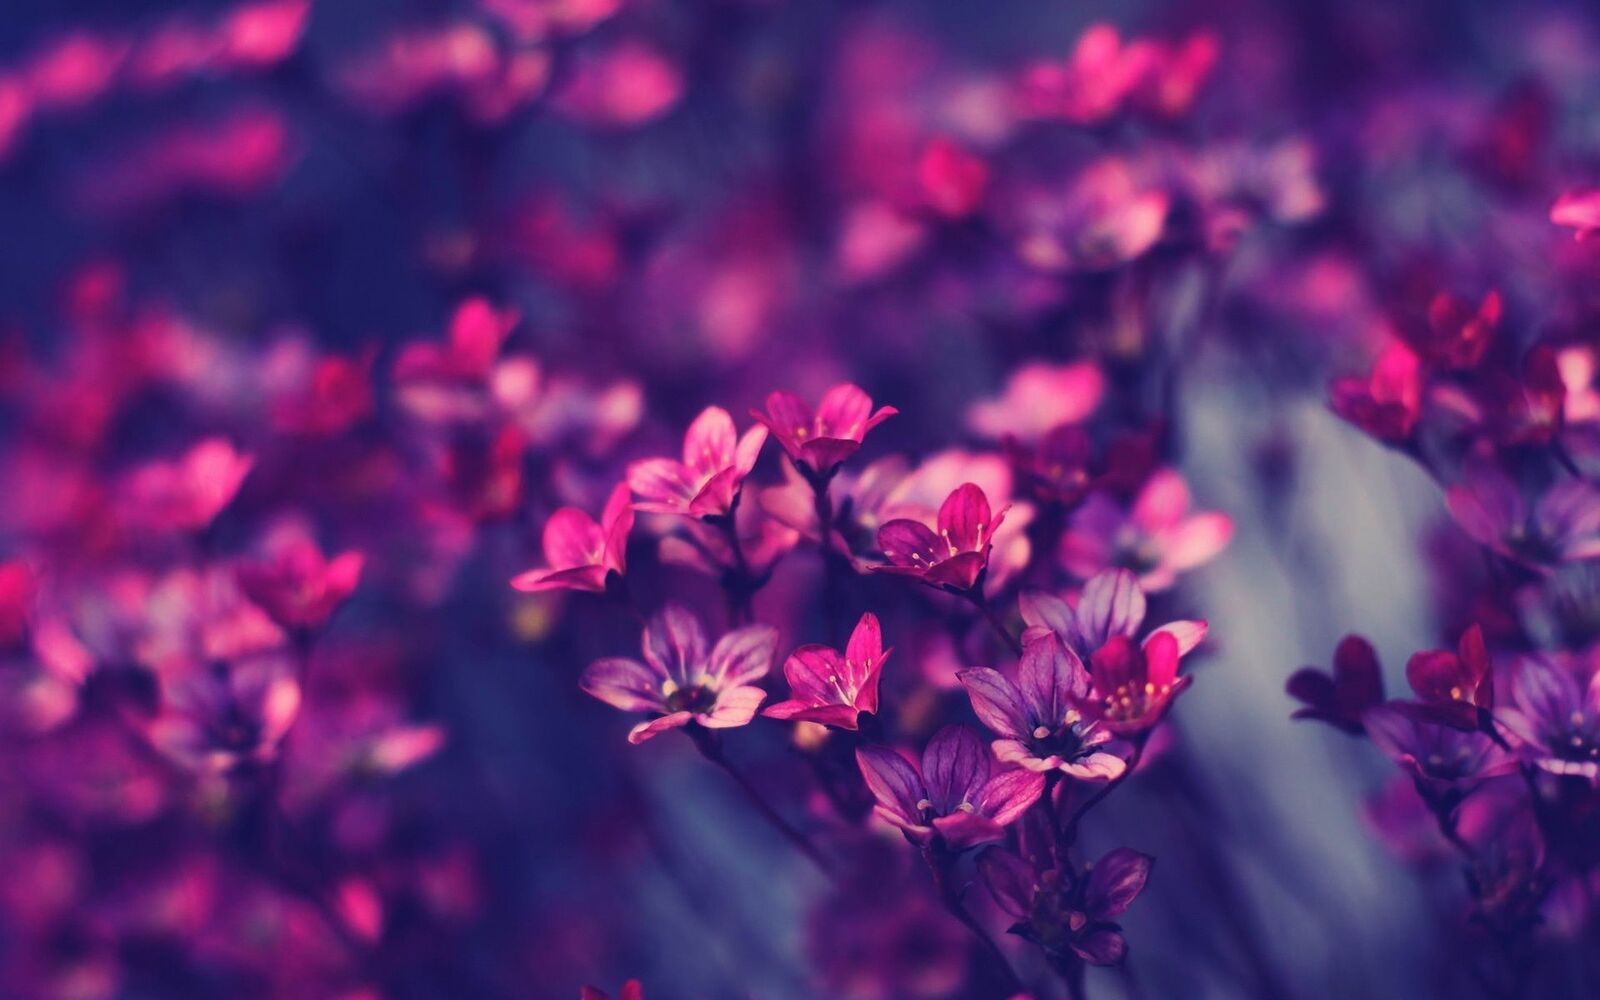 خلفيات زهور خمراء وزهور زرقاء , صور ازهار ممزوجة بالوان , اروع صور زهور